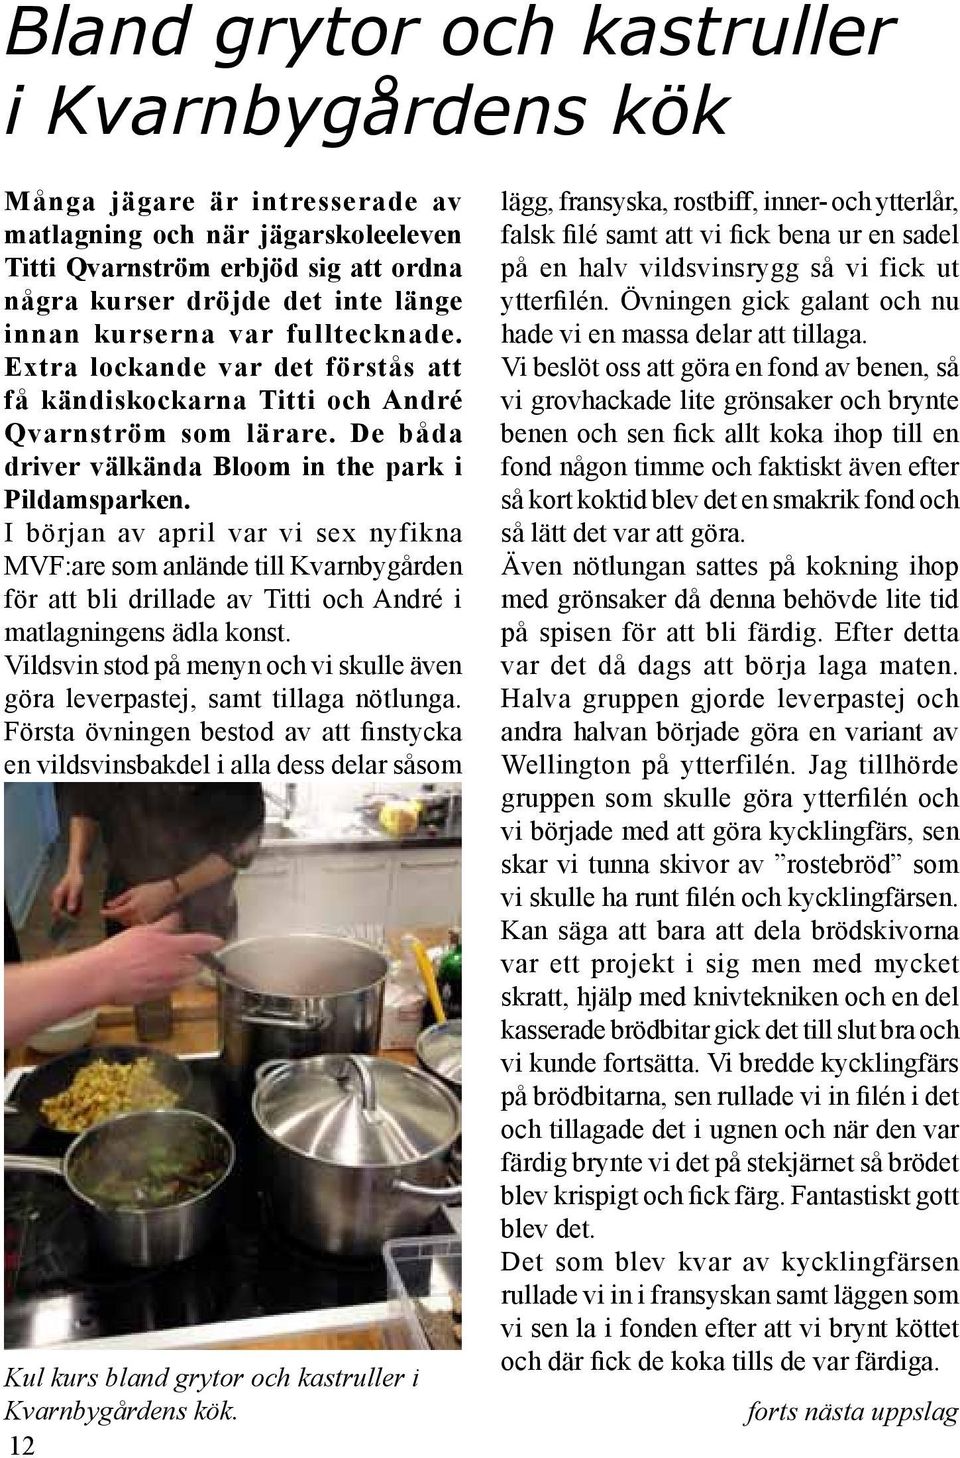 I början av april var vi sex nyfikna MVF:are som anlände till Kvarnbygården för att bli drillade av Titti och André i matlagningens ädla konst.